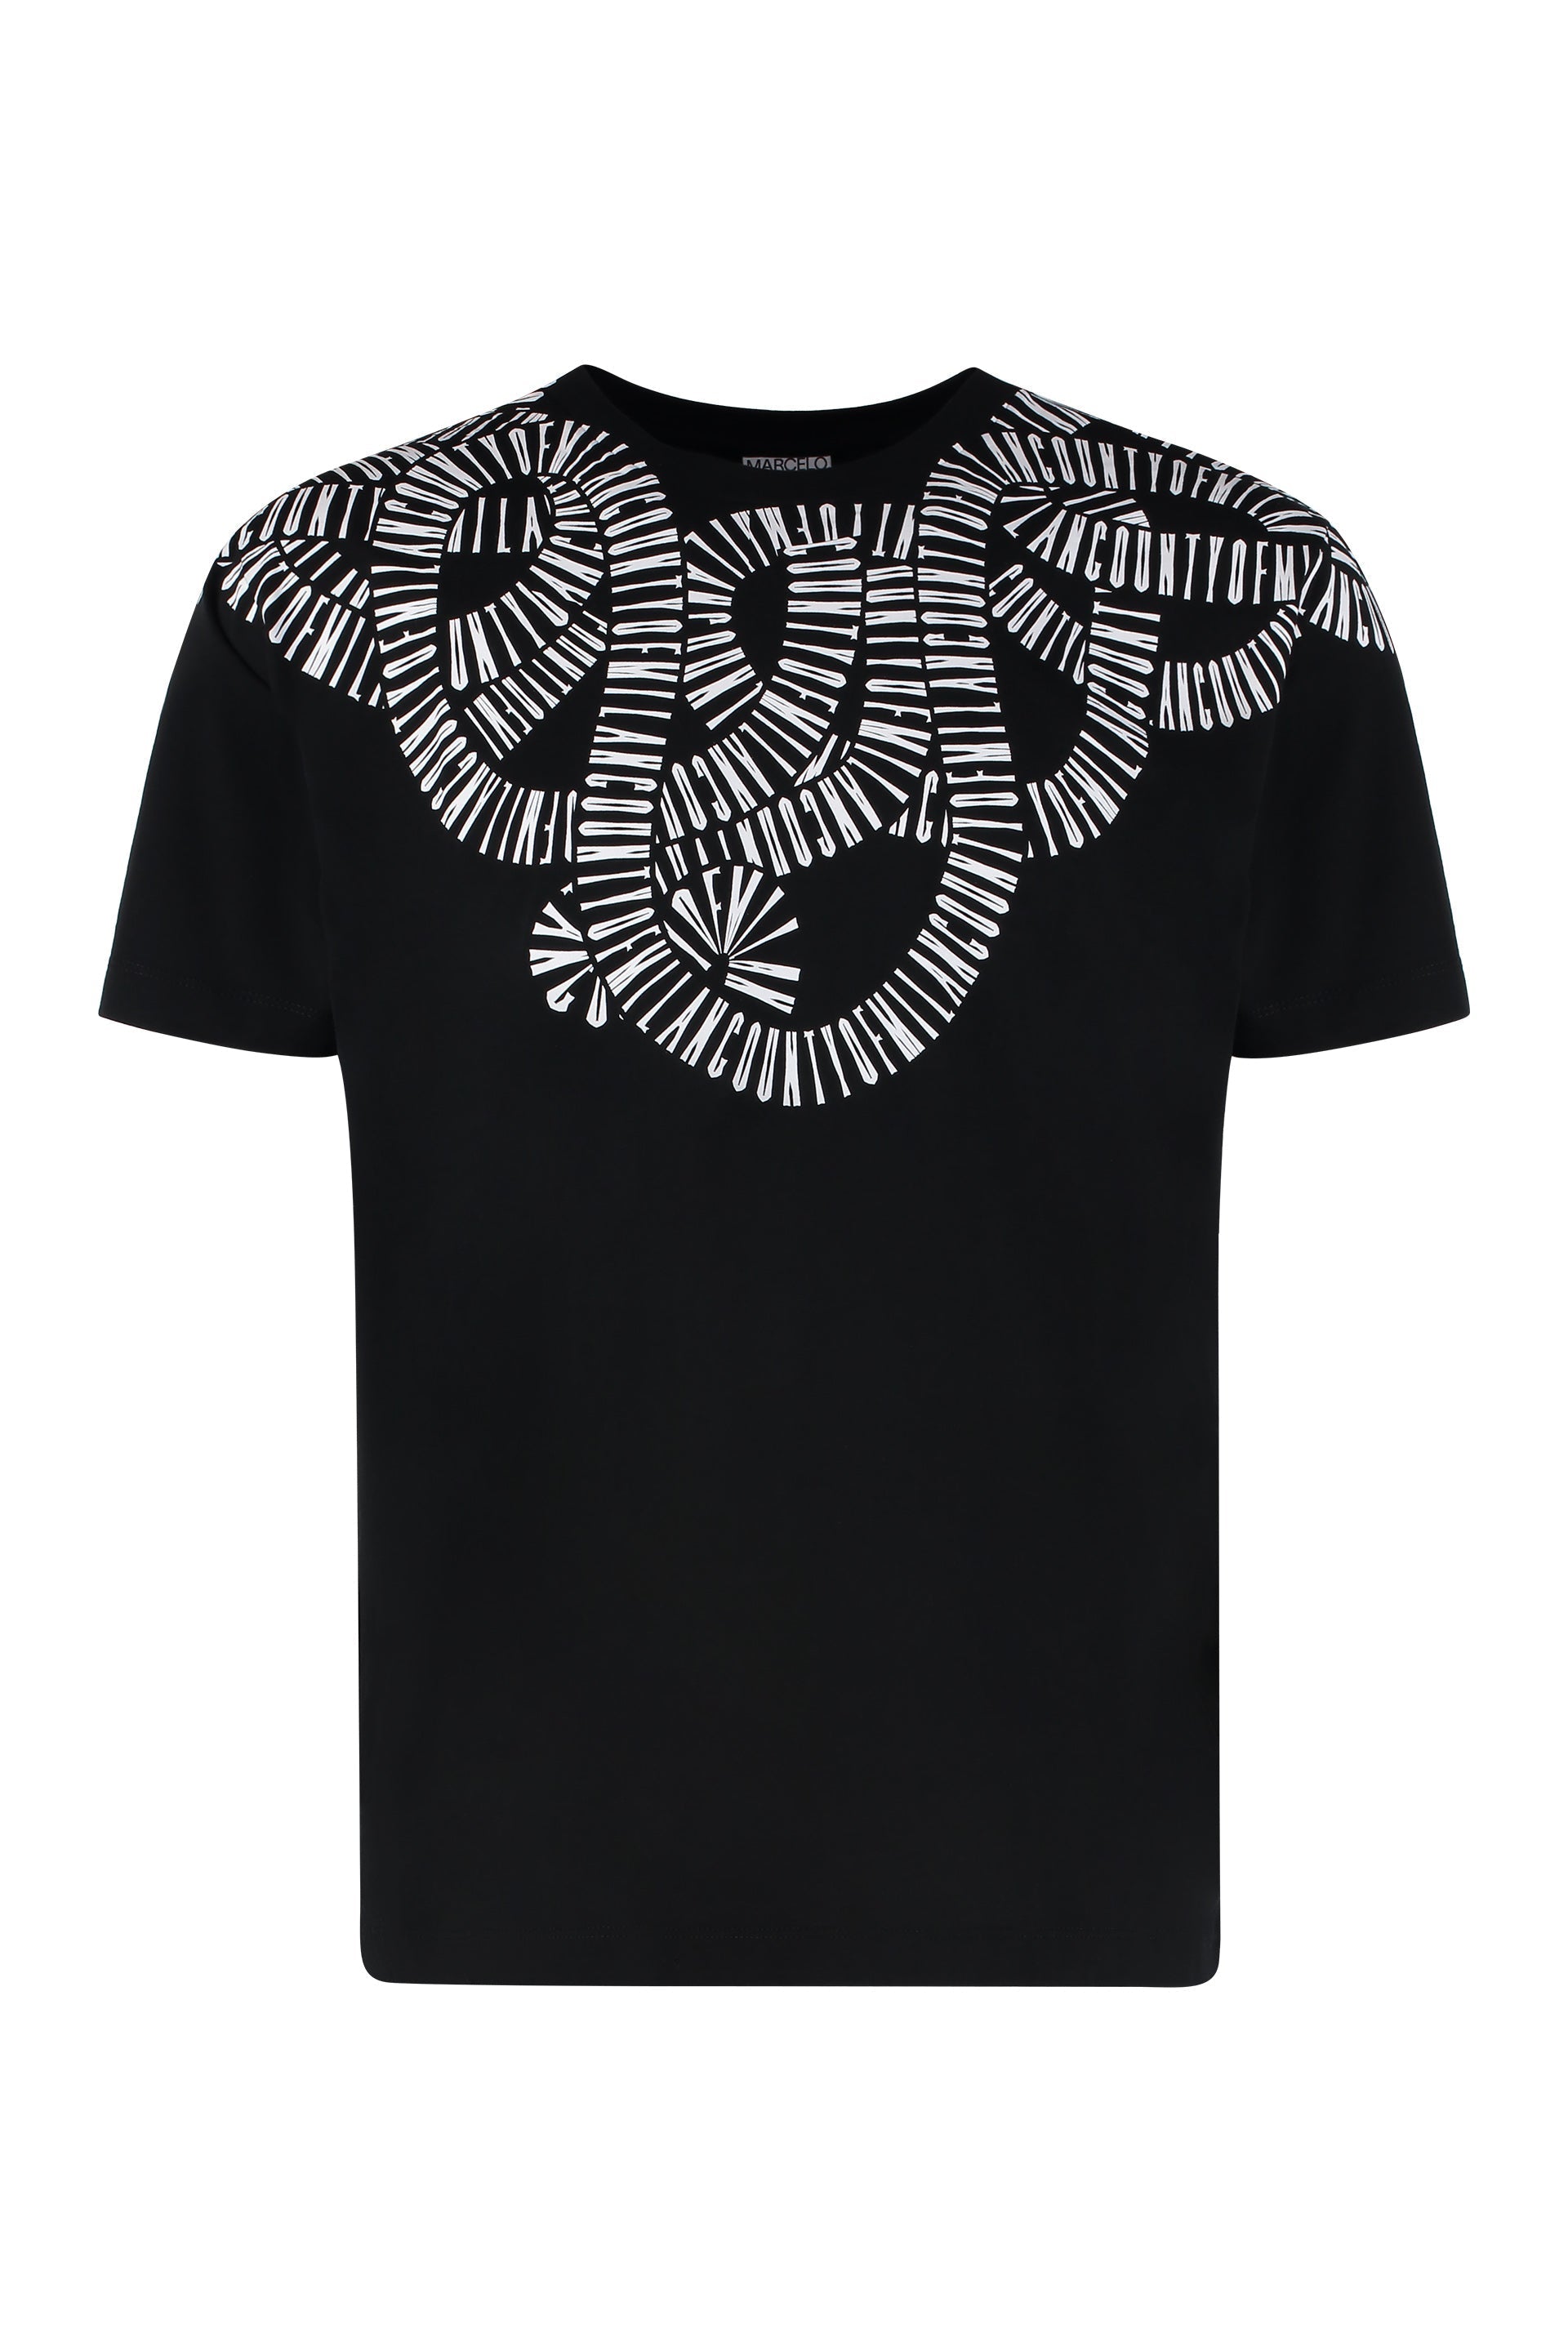 Cotton crew-neck T-shirt-Marcelo Burlon County of Milan-OUTLET-SALE-M-ARCHIVIST